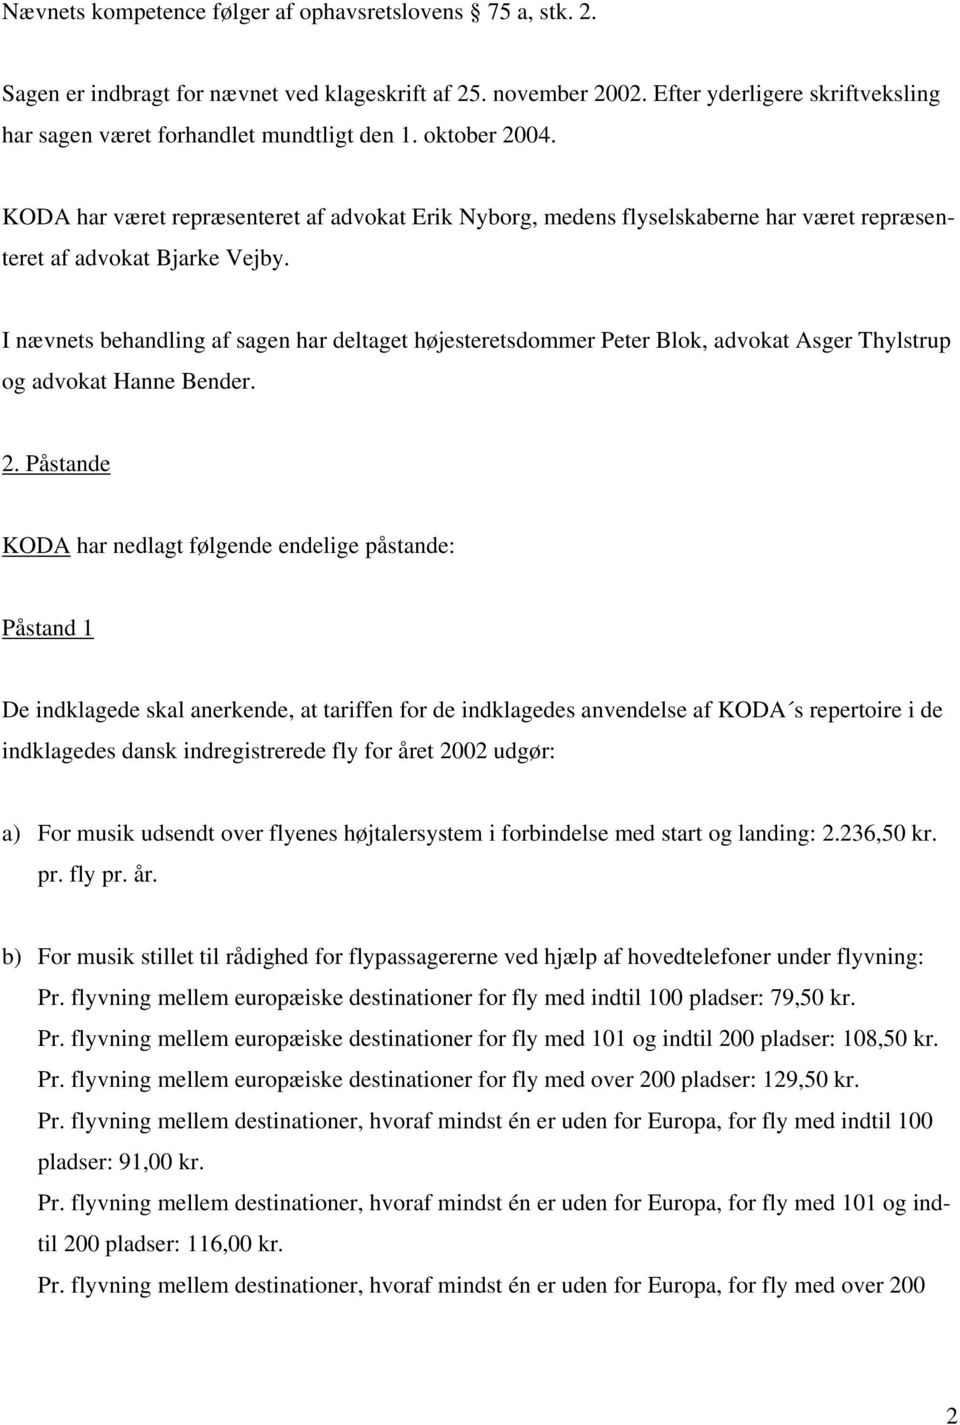 KODA har været repræsenteret af advokat Erik Nyborg, medens flyselskaberne har været repræsenteret af advokat Bjarke Vejby.